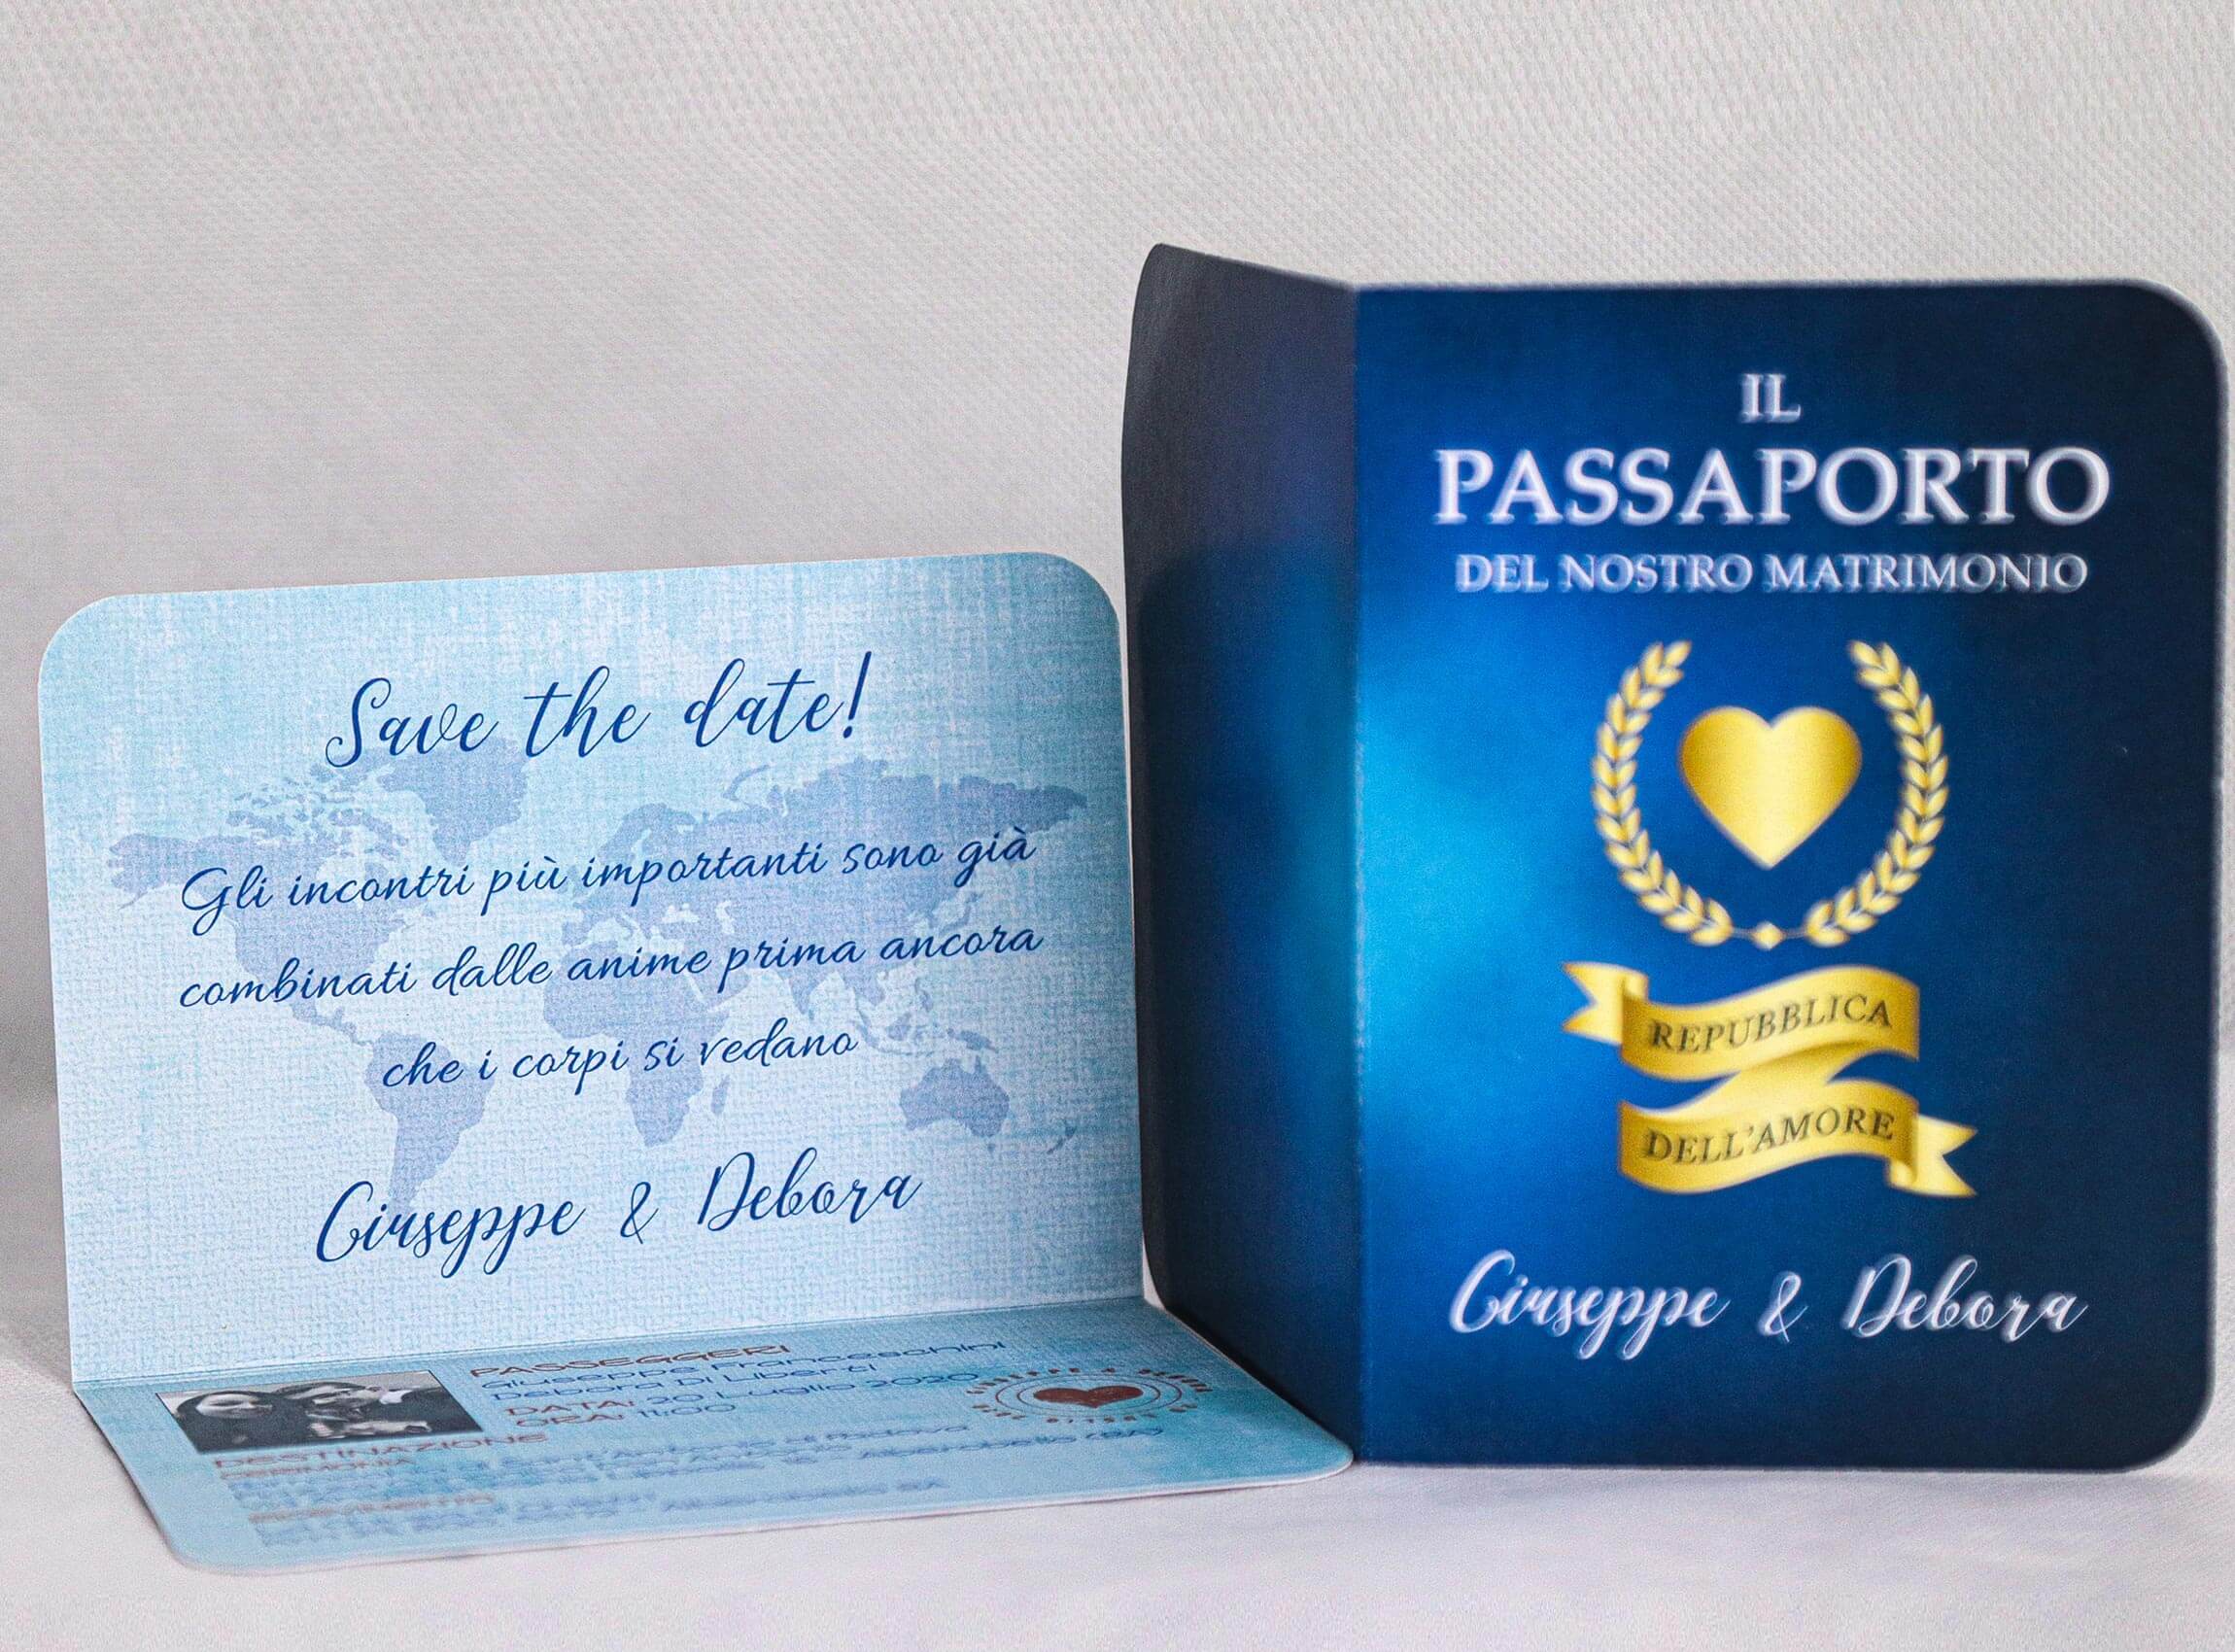 Partecipazioni matrimonio: un viaggio di amore oltre i confini con passaporto